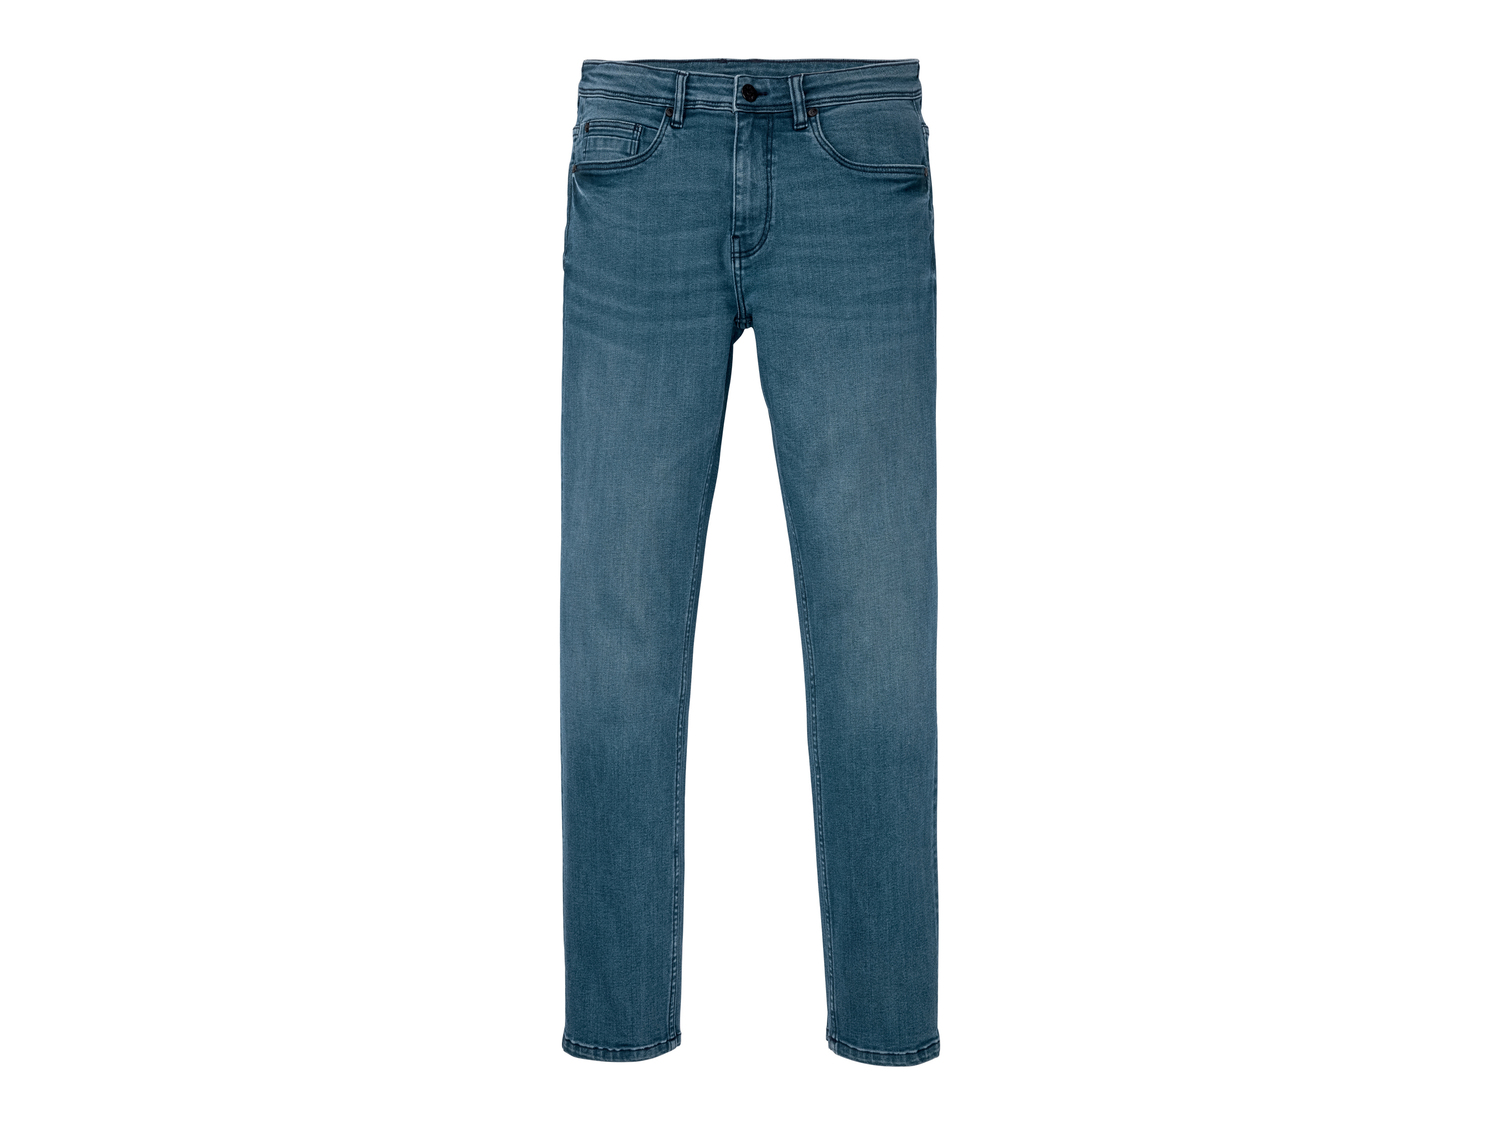 Jeans Slim Fit da uomo Livergy, prezzo 11.99 &#8364; 
Misure: 46-56
Taglie disponibili

Caratteristiche

- ...